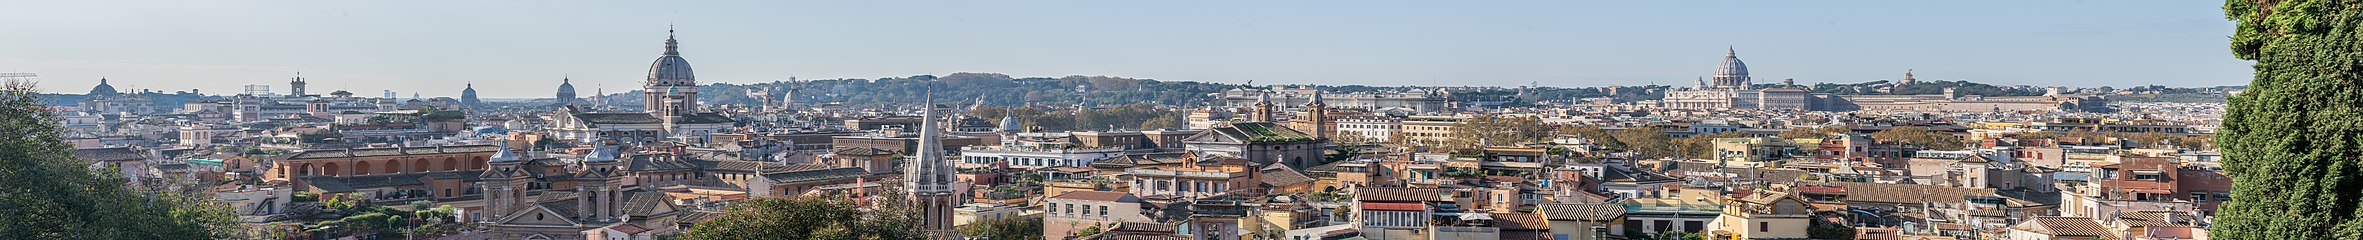 View of Rome seen from Viale della Trinità dei Monti